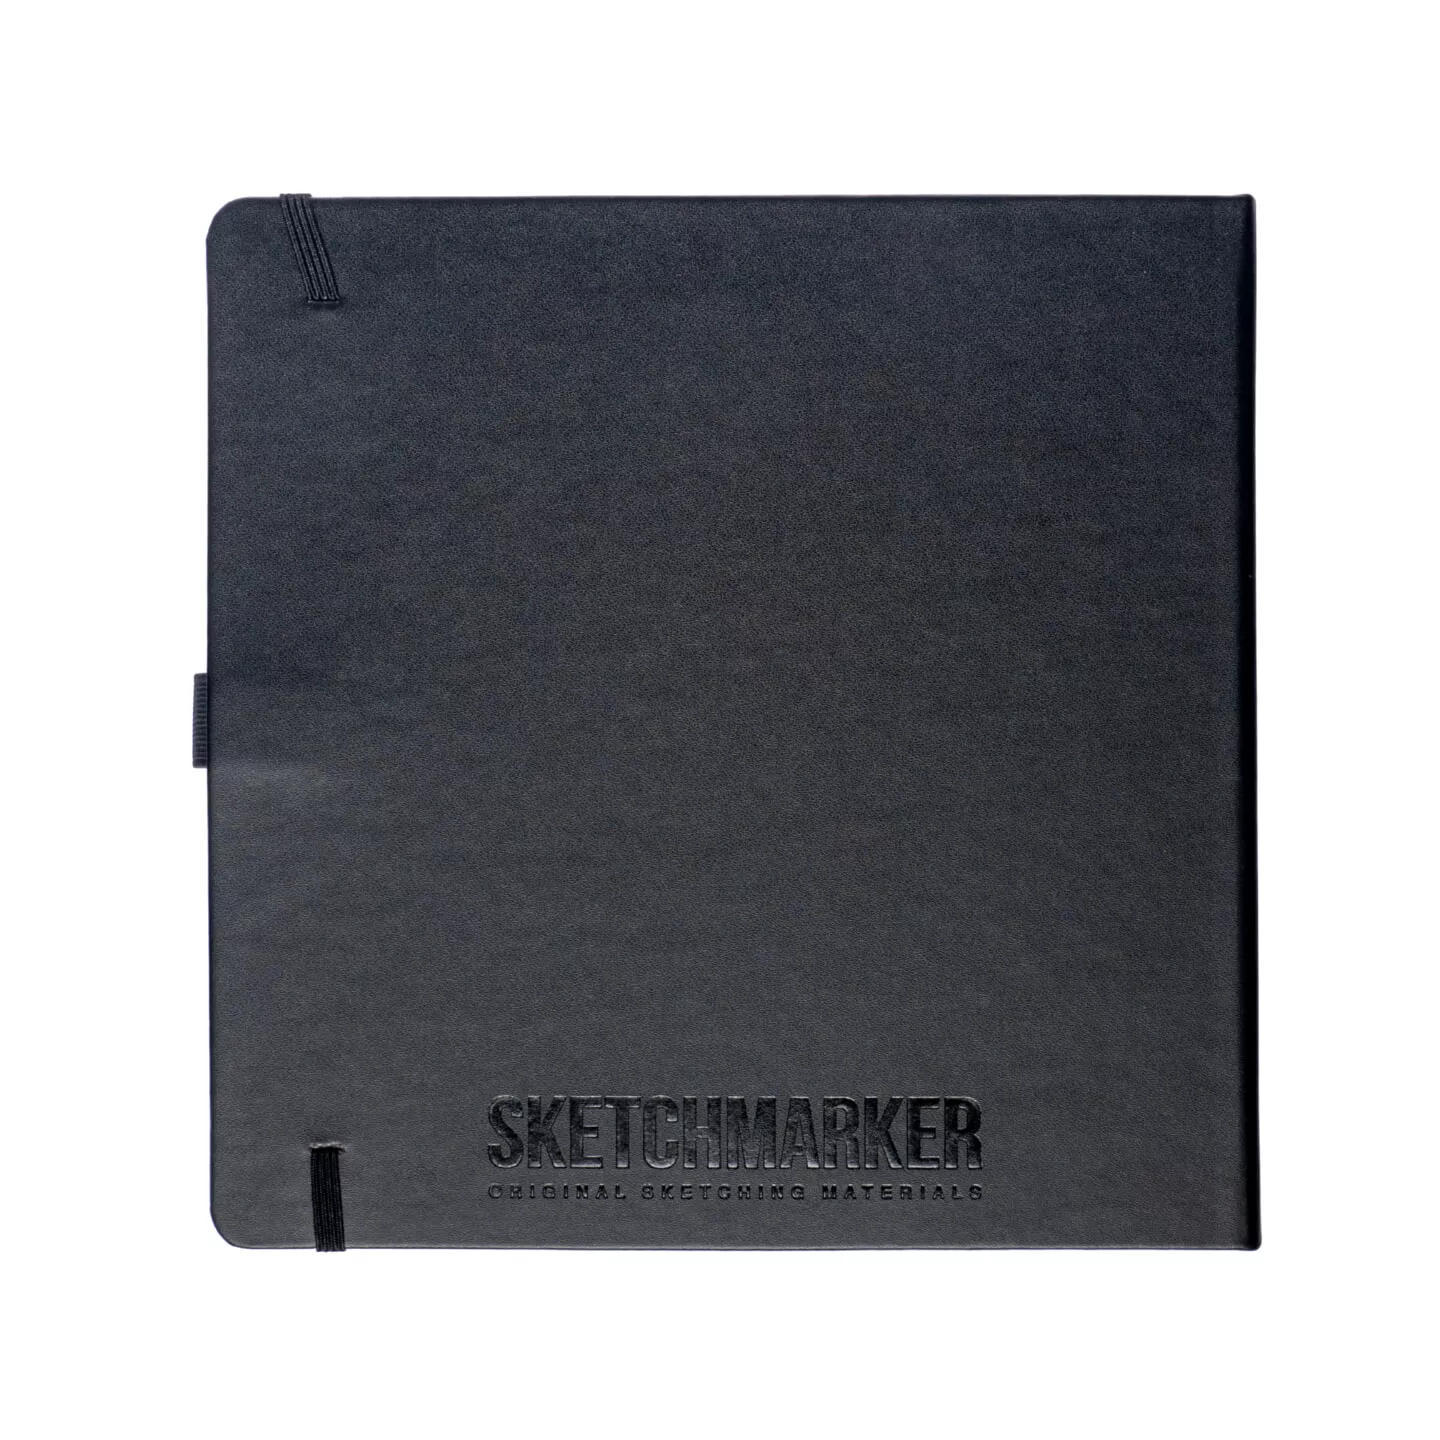 Блокнот для зарисовок Sketchmarker 140г/кв.м 20*20cм 80л (Черный)